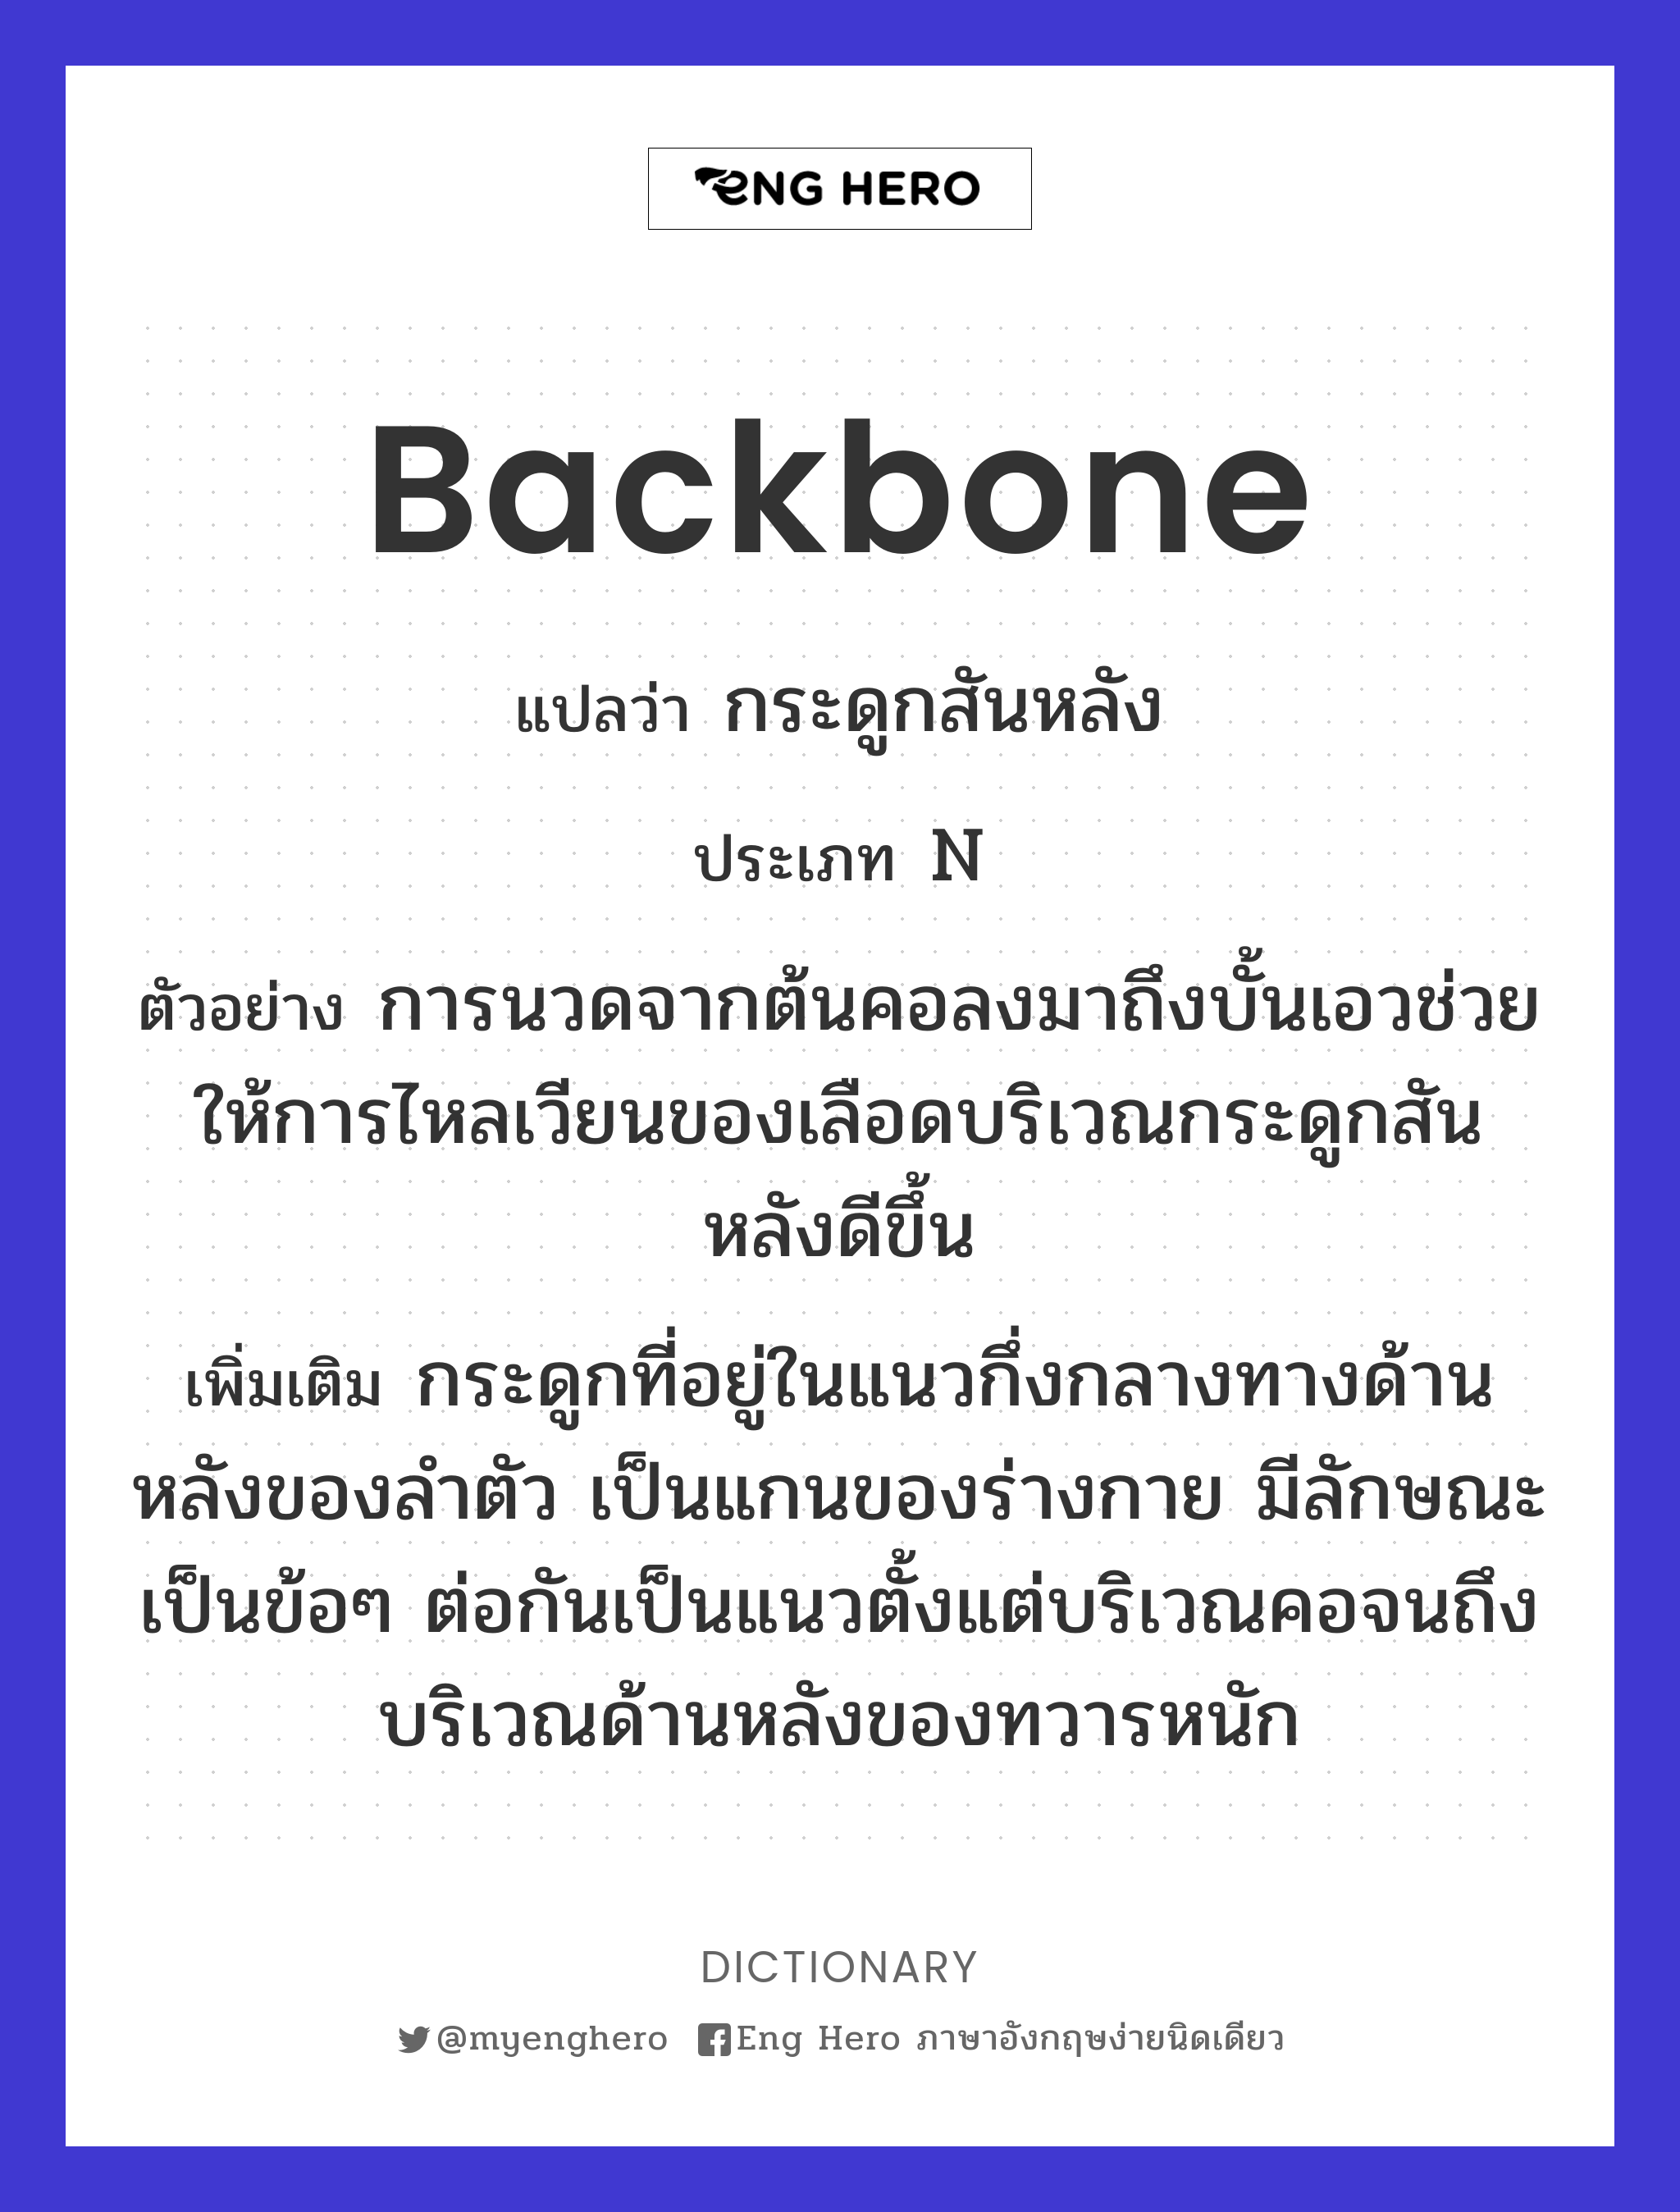 backbone